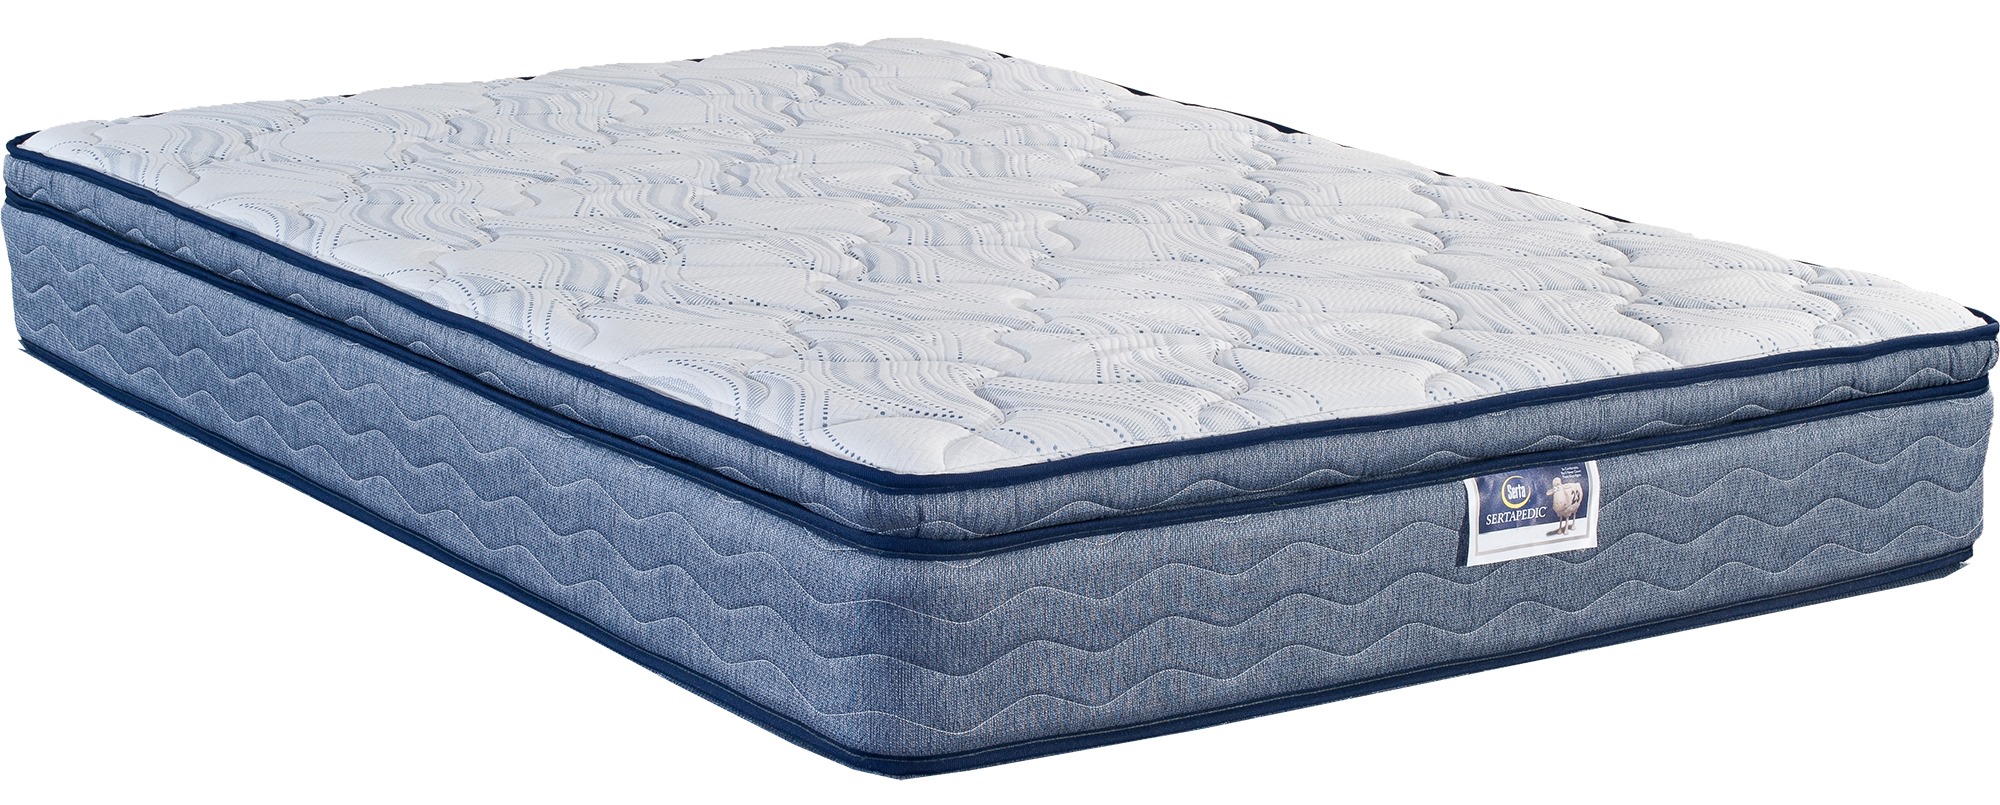 serta extravagant euro top king size mattress set